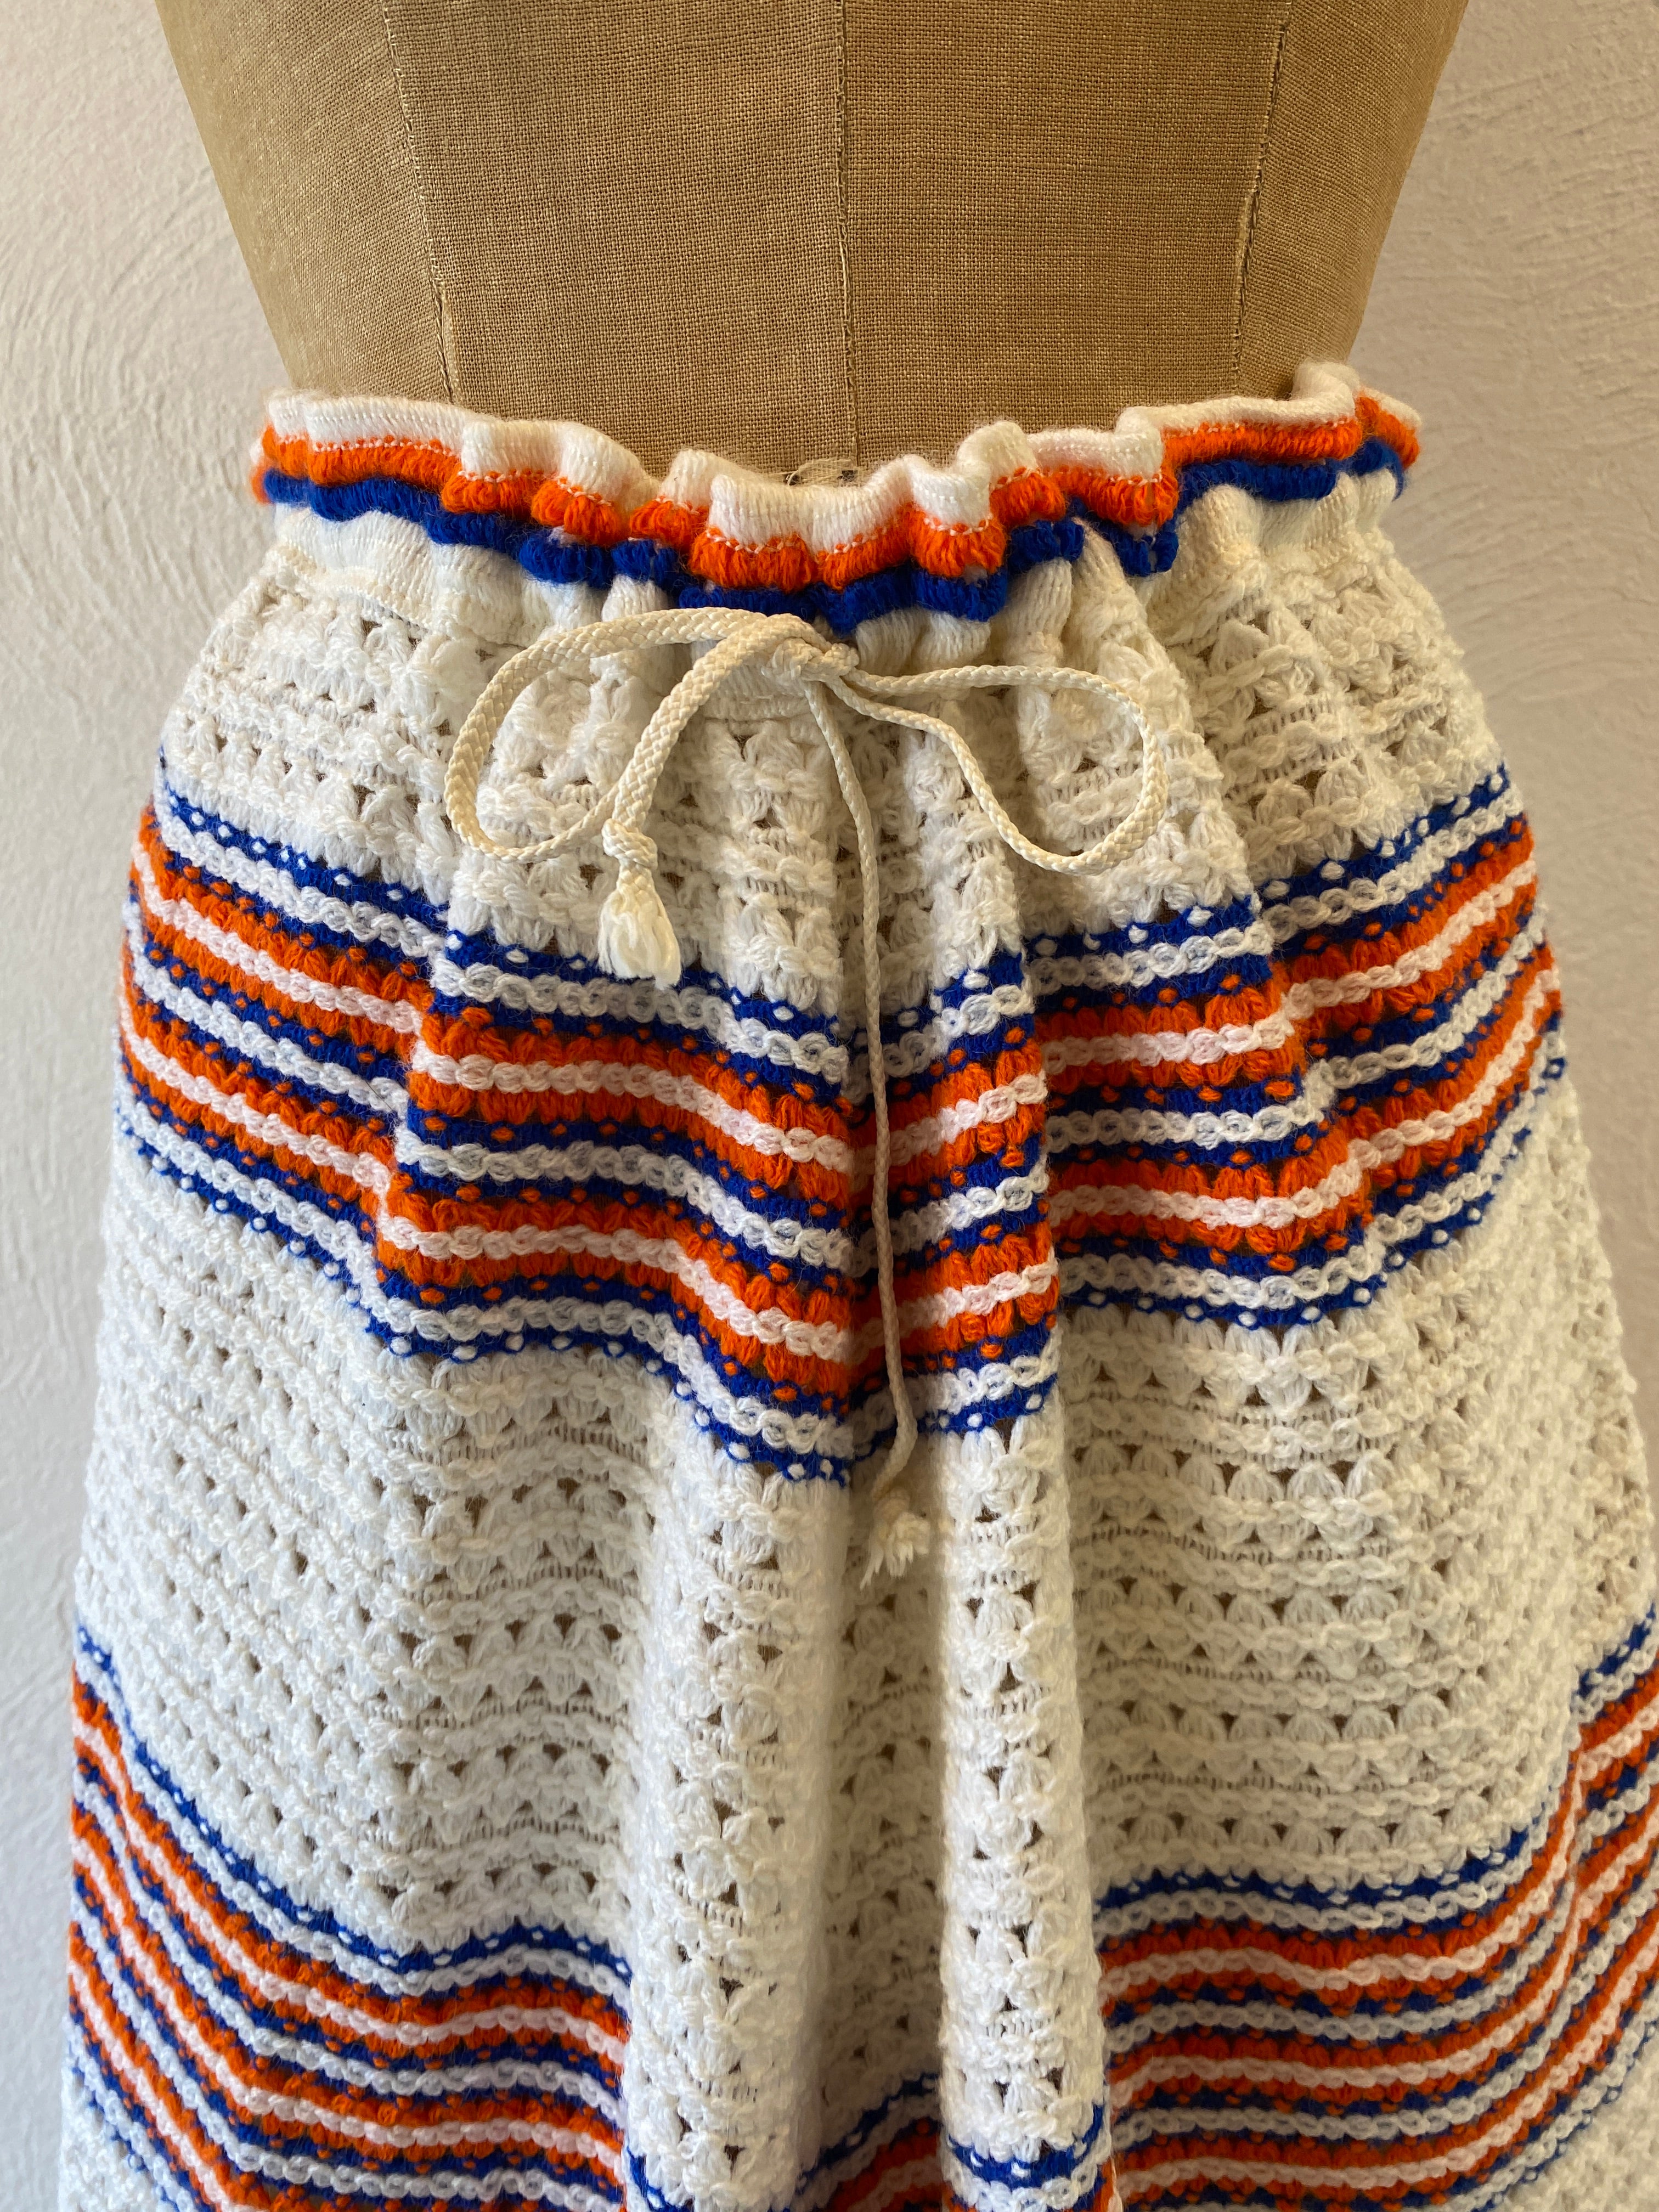 white knit skirt